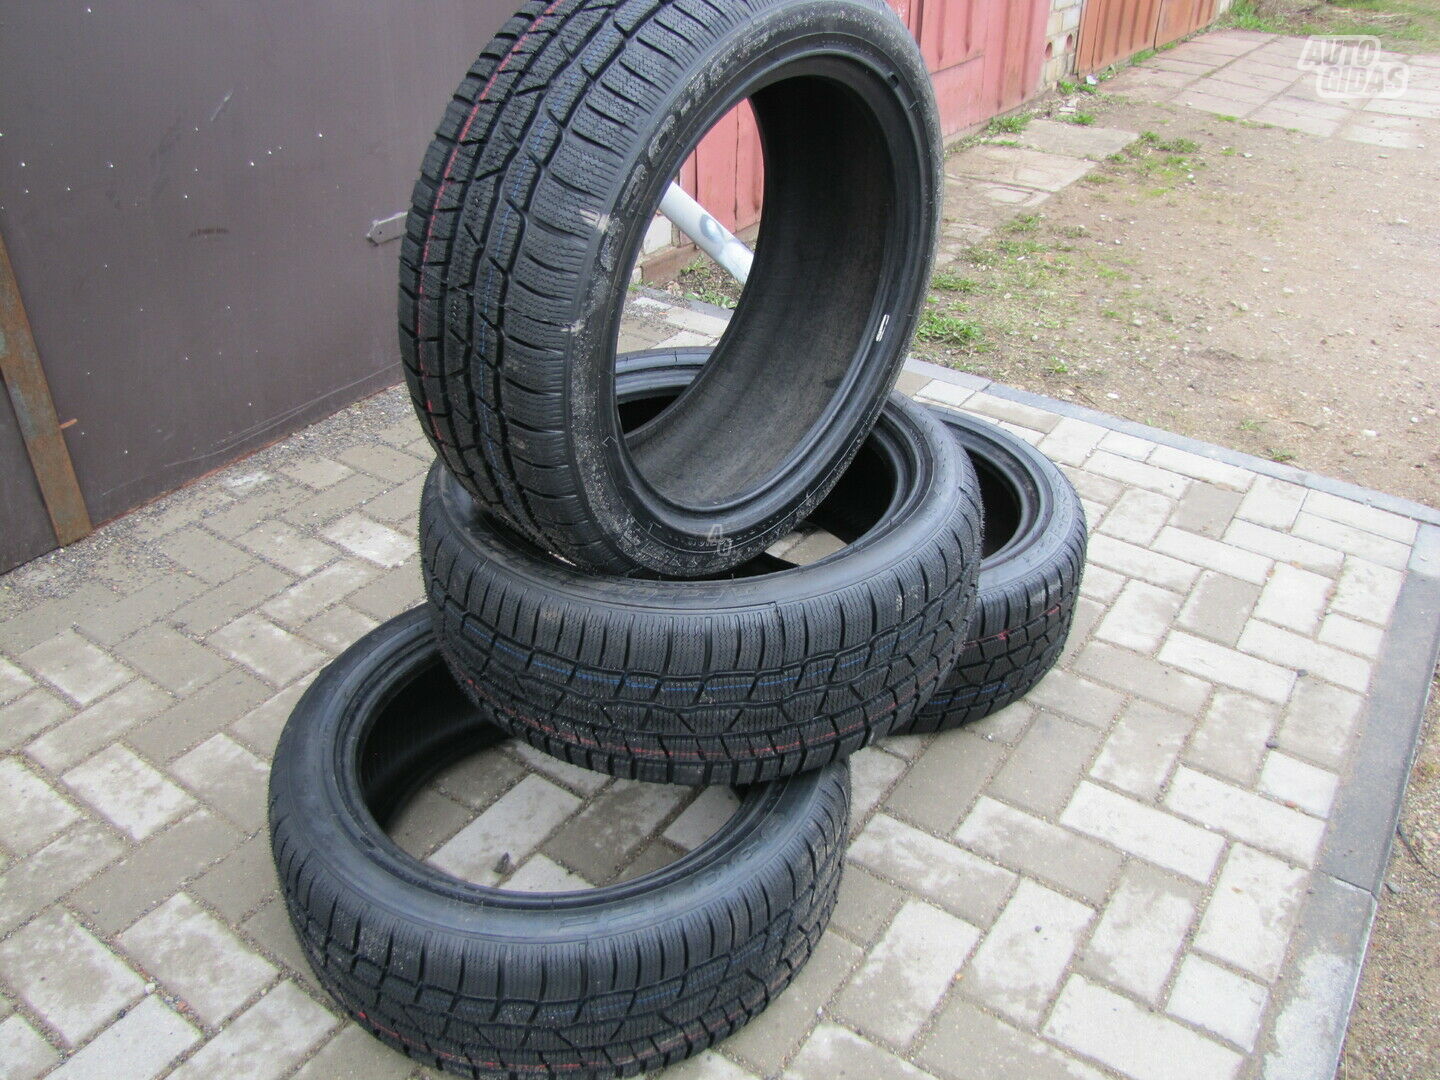 Agi TAGOMTIRES GHIACCIO R18 winter tyres passanger car